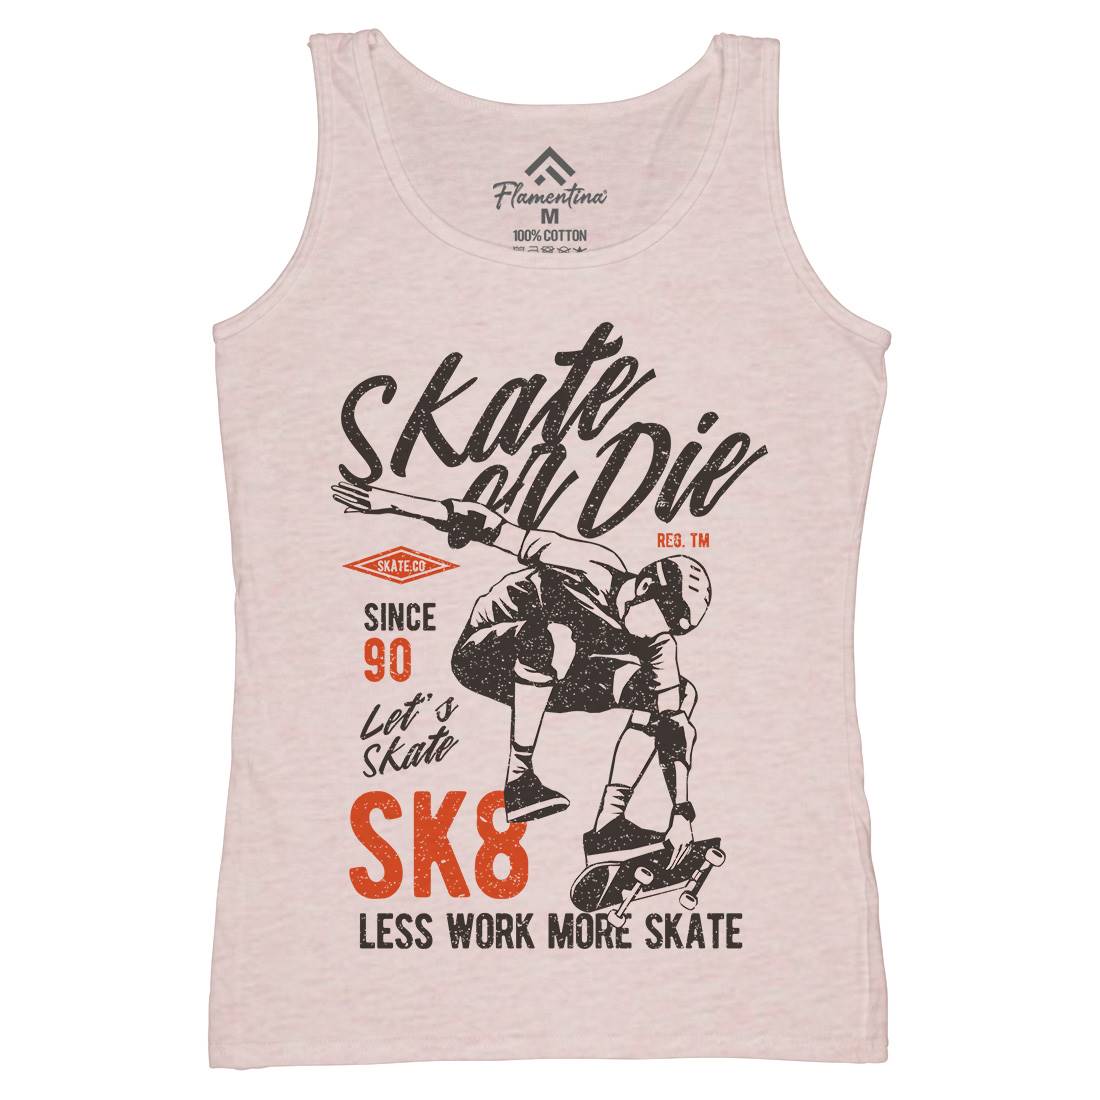 Or Die Womens Organic Tank Top Vest Skate A754